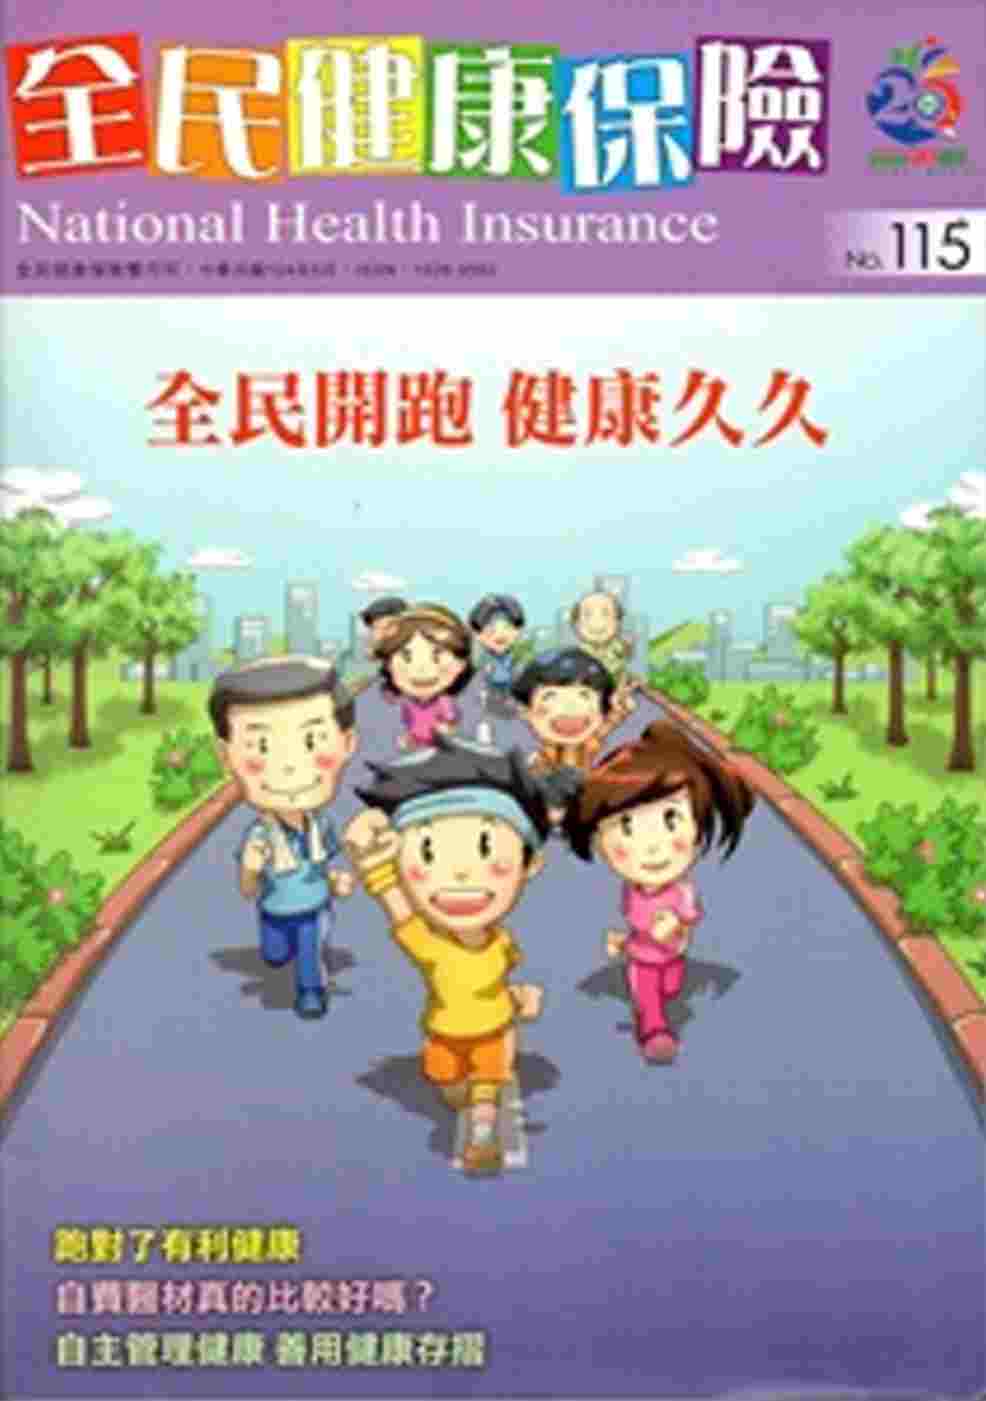 全民健康保險雙月刊NO.115-2015.05